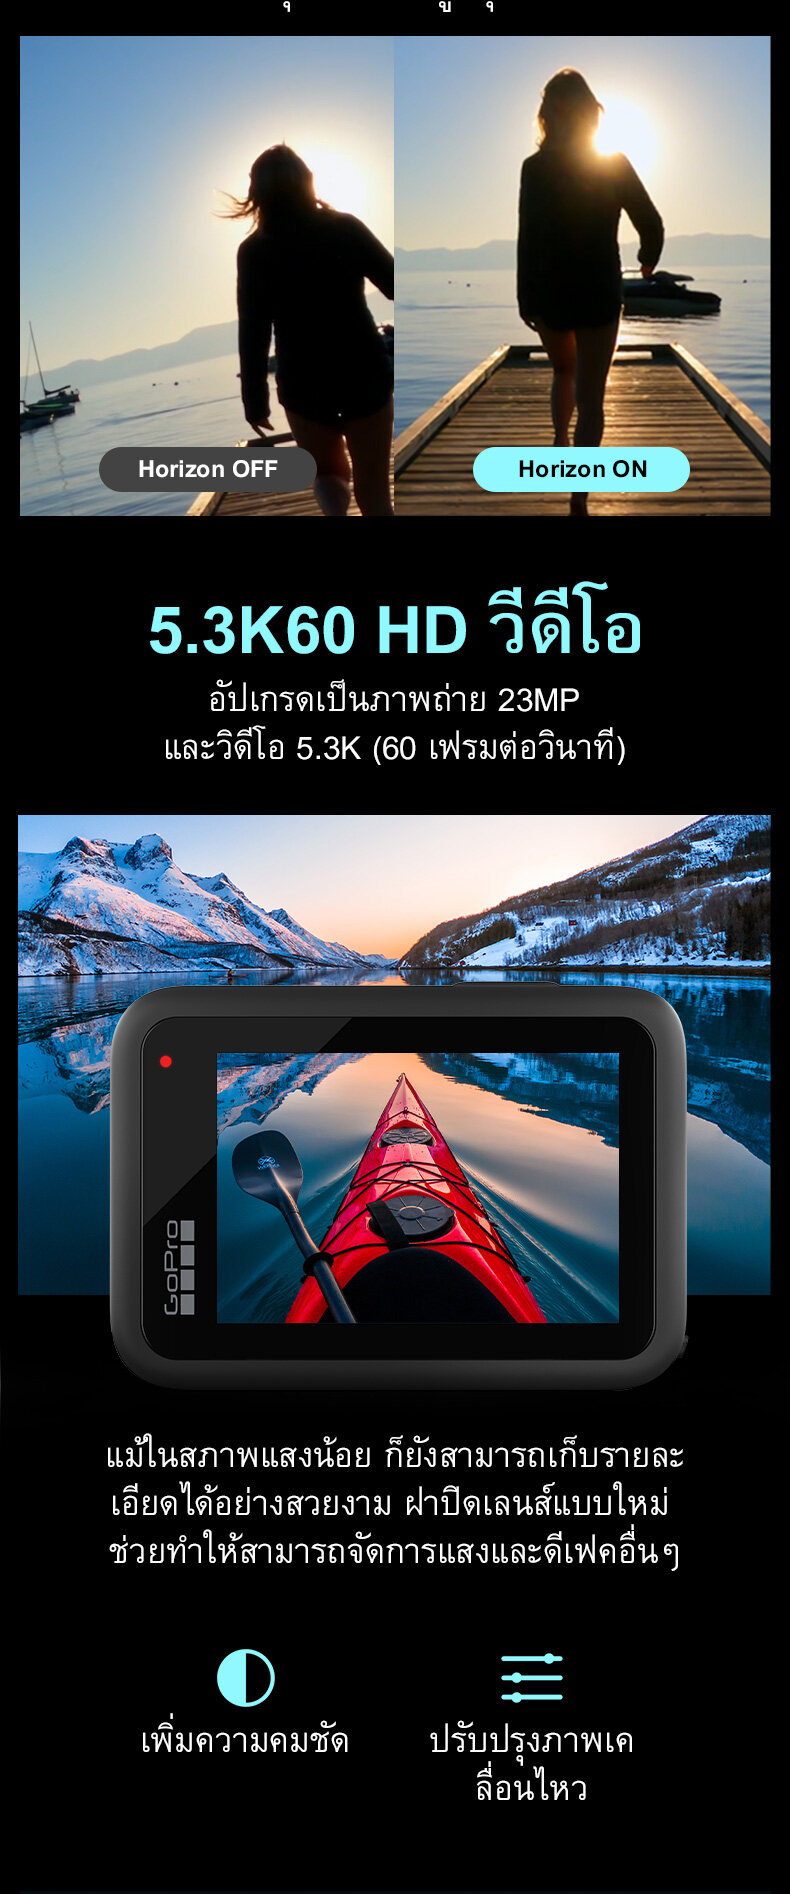 รายละเอียดเพิ่มเติมเกี่ยวกับ [ส่งจากไทย 3-5 วัน] กล้อง GoPro HERO10 สีดำ 5.3 K และภาพถ่าย 23 MP ใหม่ GP 2 โปรเซสเซอร์ไฮเปอร์เรียบ 4.0 กล้อง ActionSports กล้องกันน้ำ (รับประกัน 1 ปี)